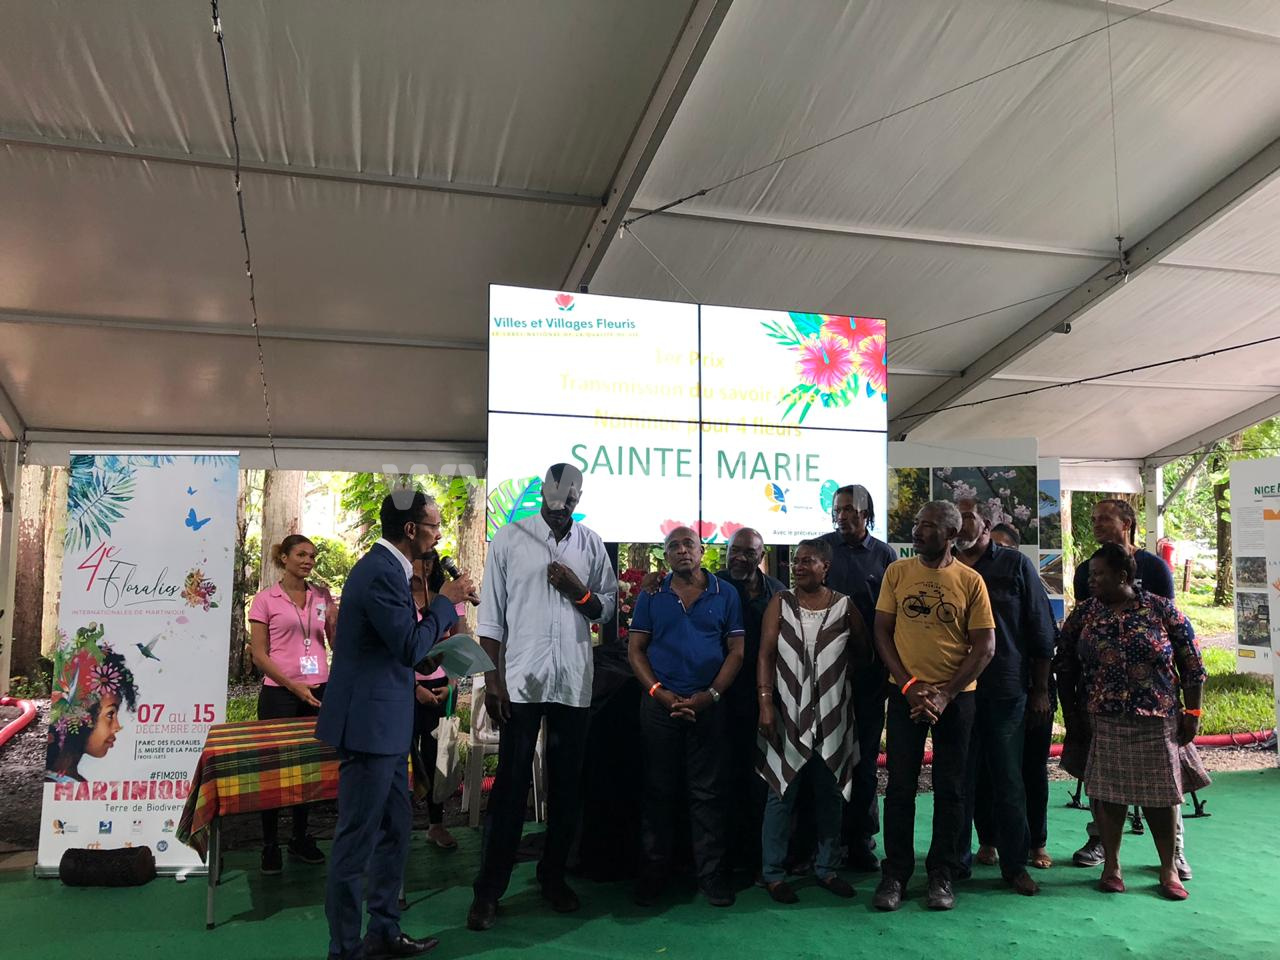     Sainte-Marie élue pour la 3e année consécutive ville la plus fleurie de Martinique

